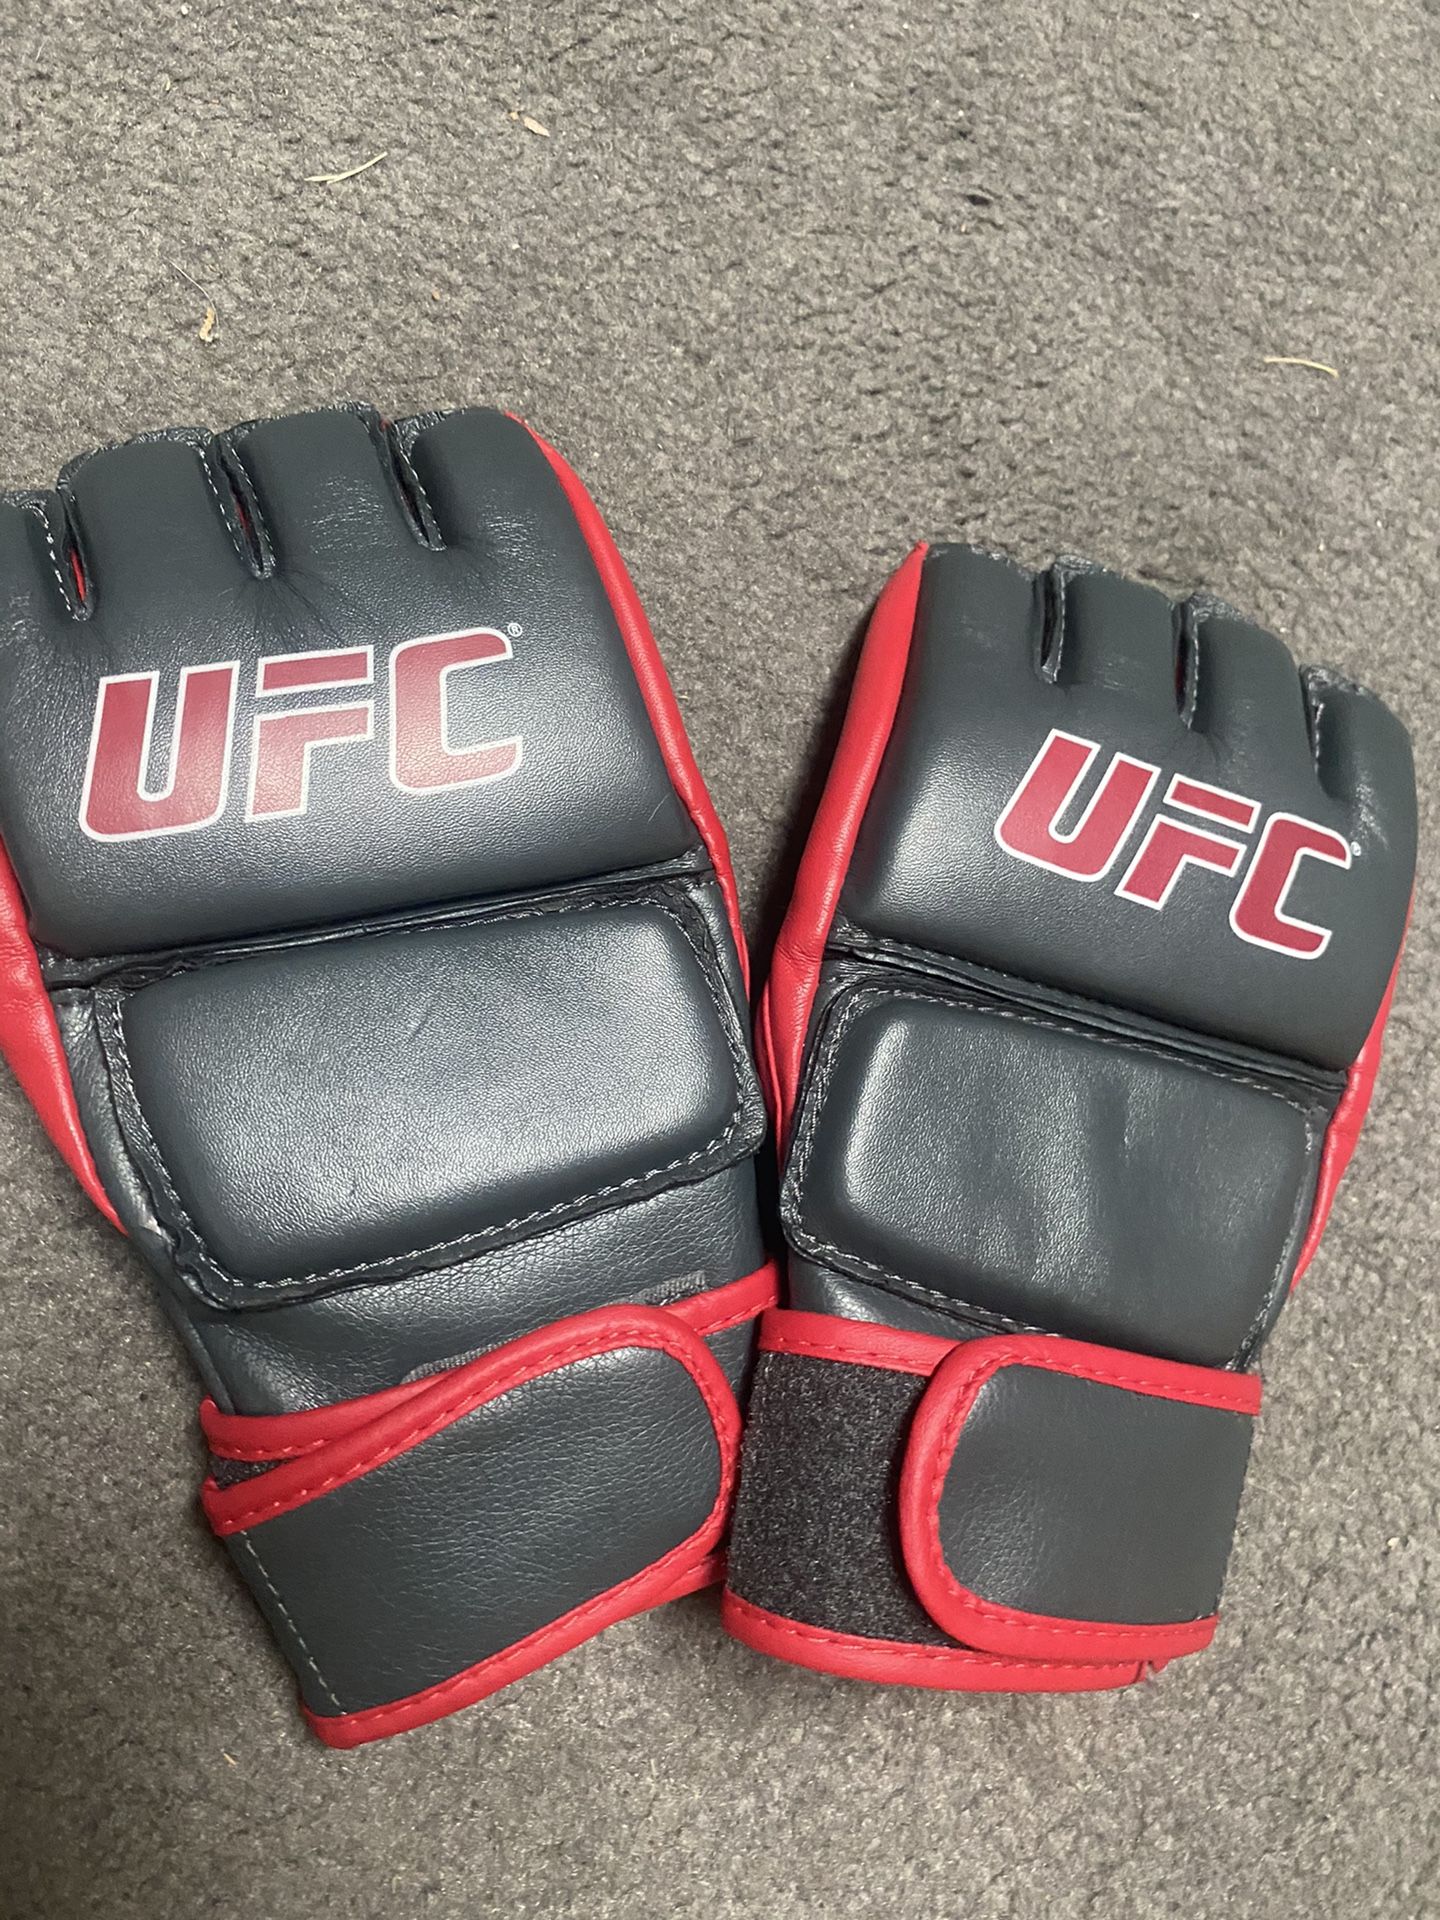 4 oz UFC MMA fighting gloves